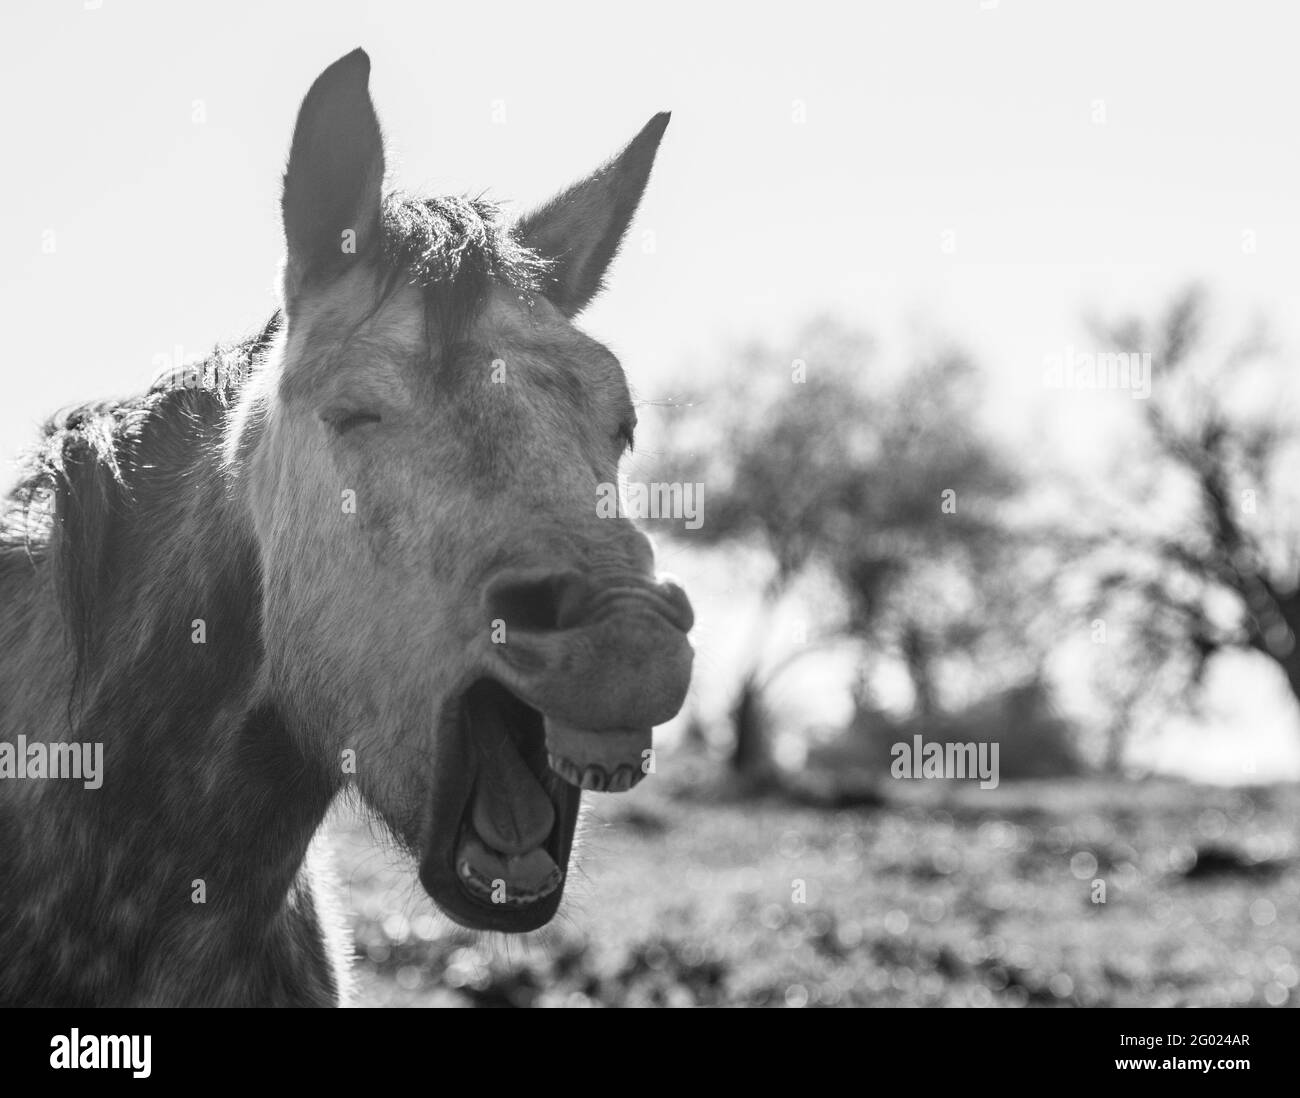 Immagine in bianco e nero di un cavallo che apre la bocca, sembra ridere. Foto Stock